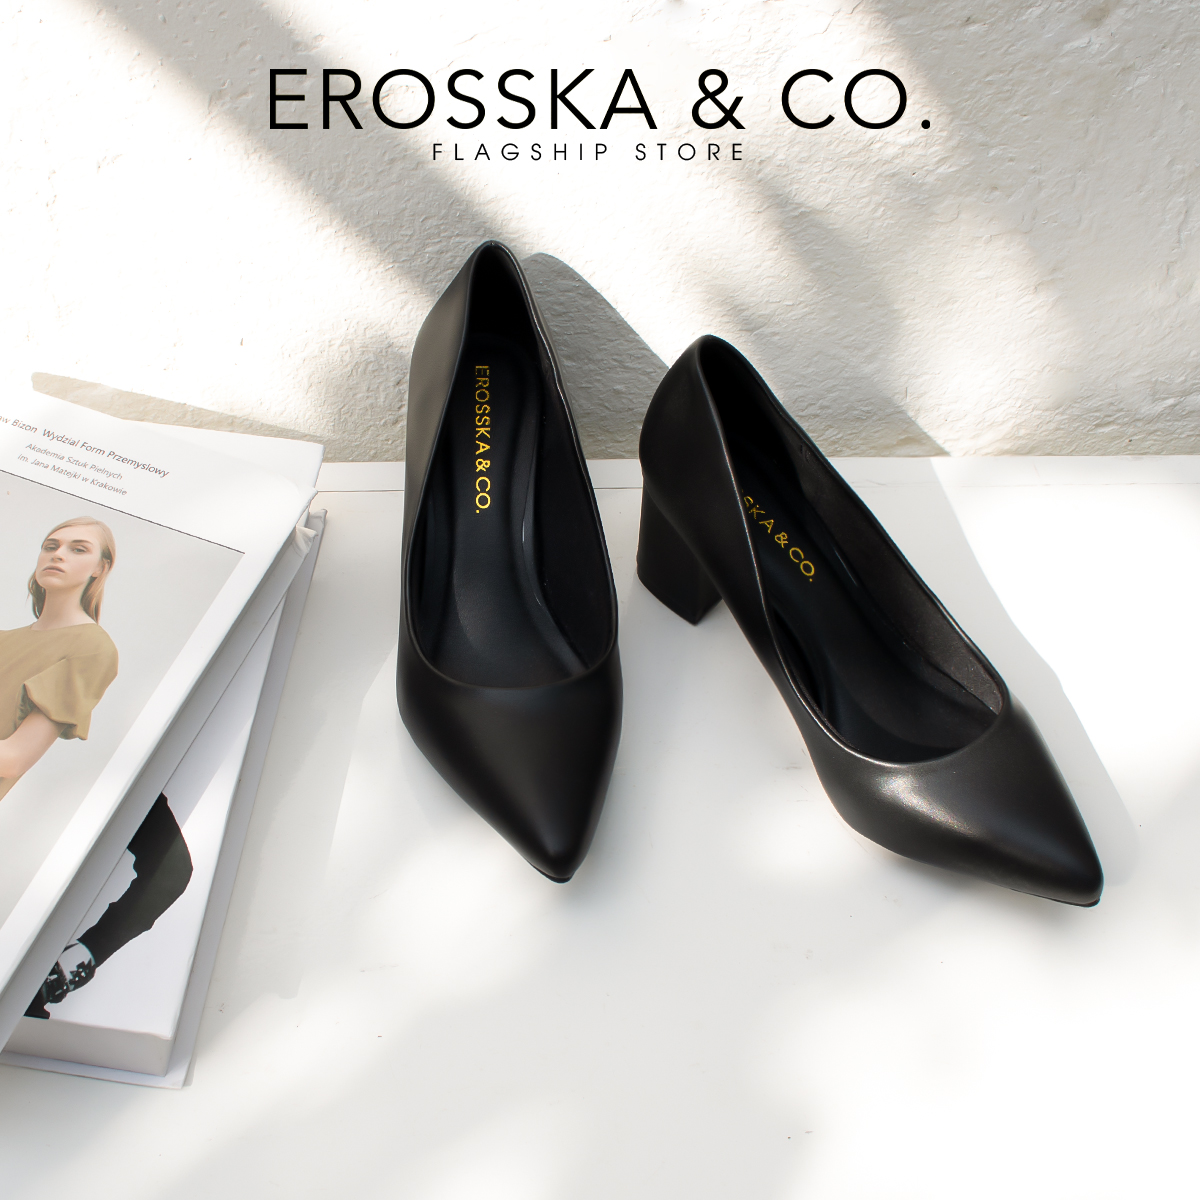 Giày cao gót Erosska mũi nhọn kiểu dáng cơ bản cao 5cm màu xám - EP011